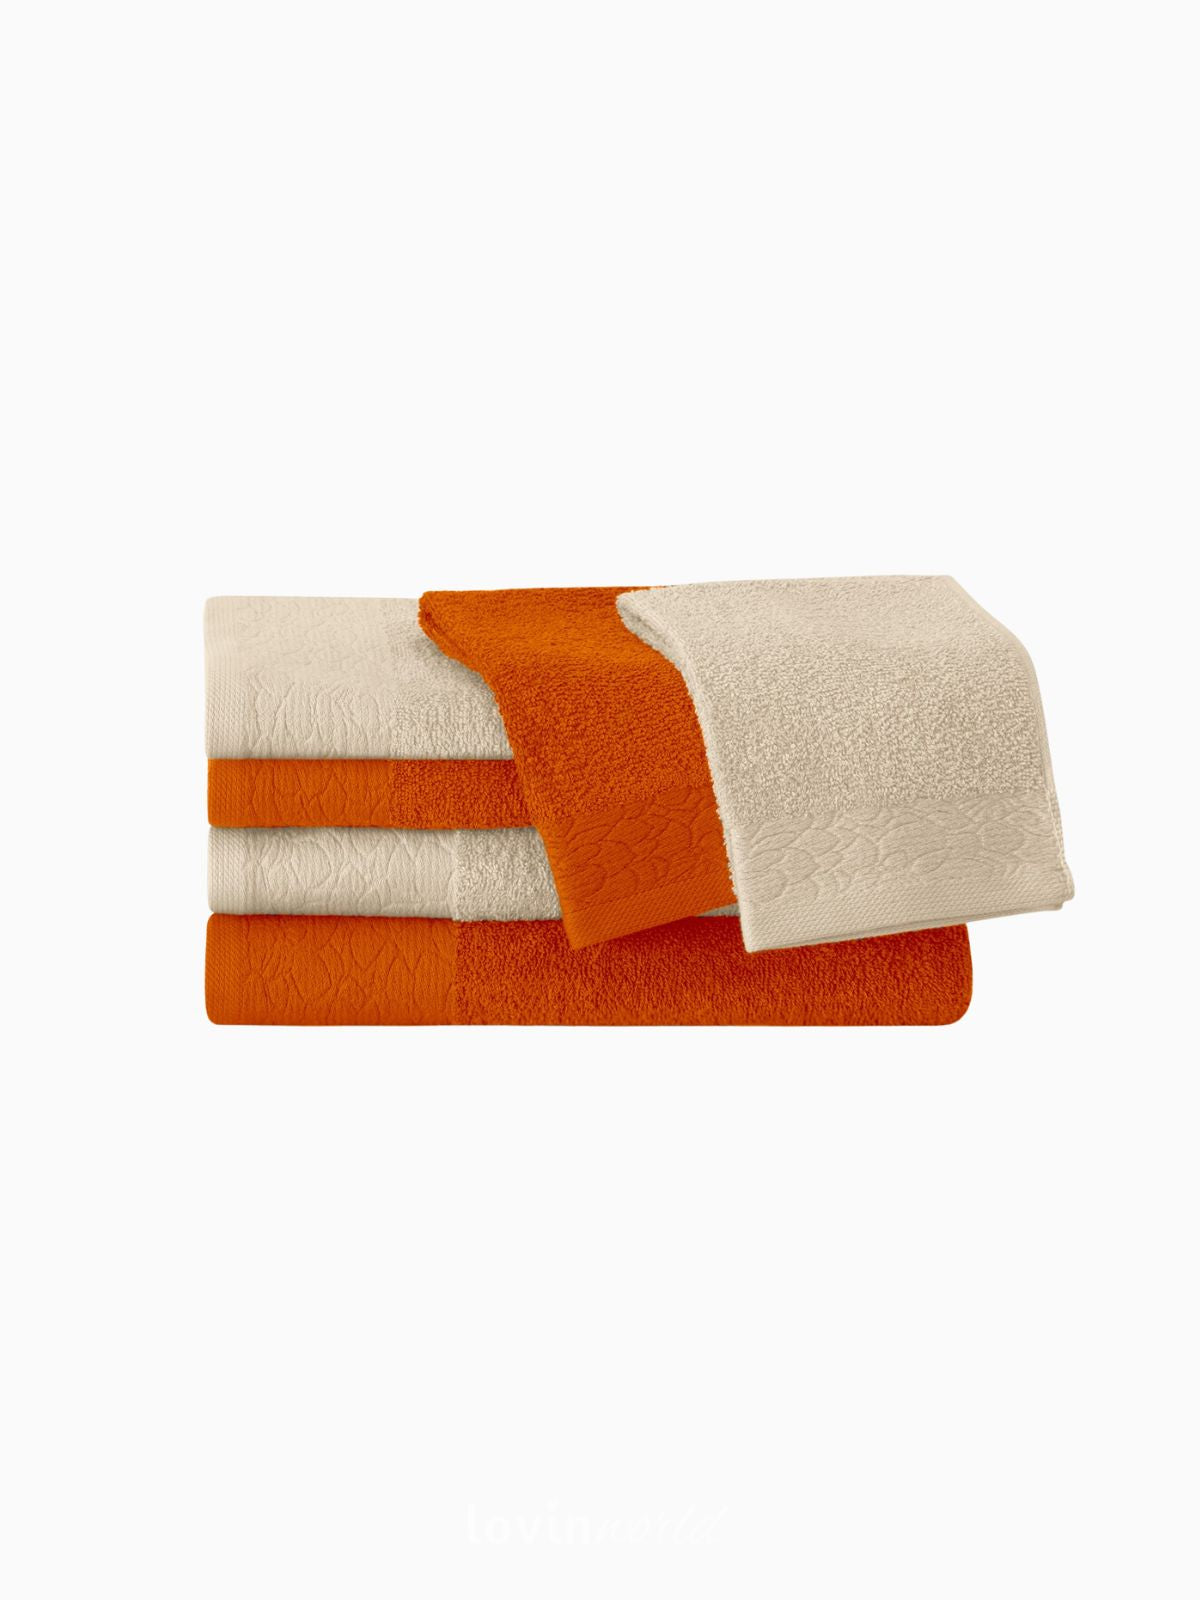 Set 6 Asciugamani da bagno Flos in 100% cotone, colore arancio e beige-2